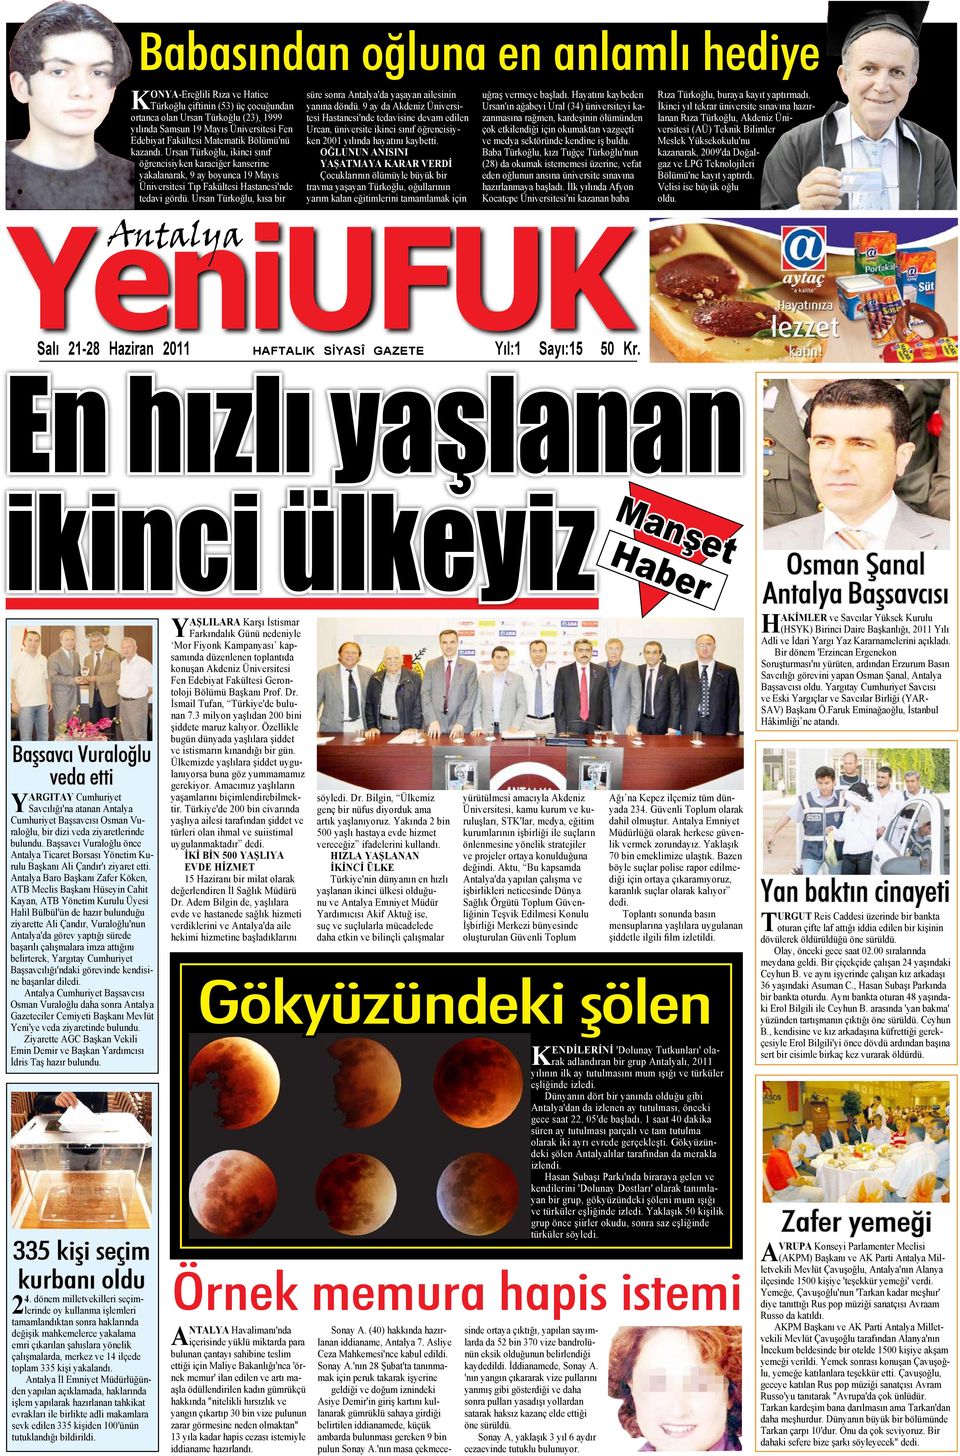 Ursan Türkoğlu, kısa bir YeniUFUK Antalya süre sonra Antalya'da yaşayan ailesinin yanına döndü.